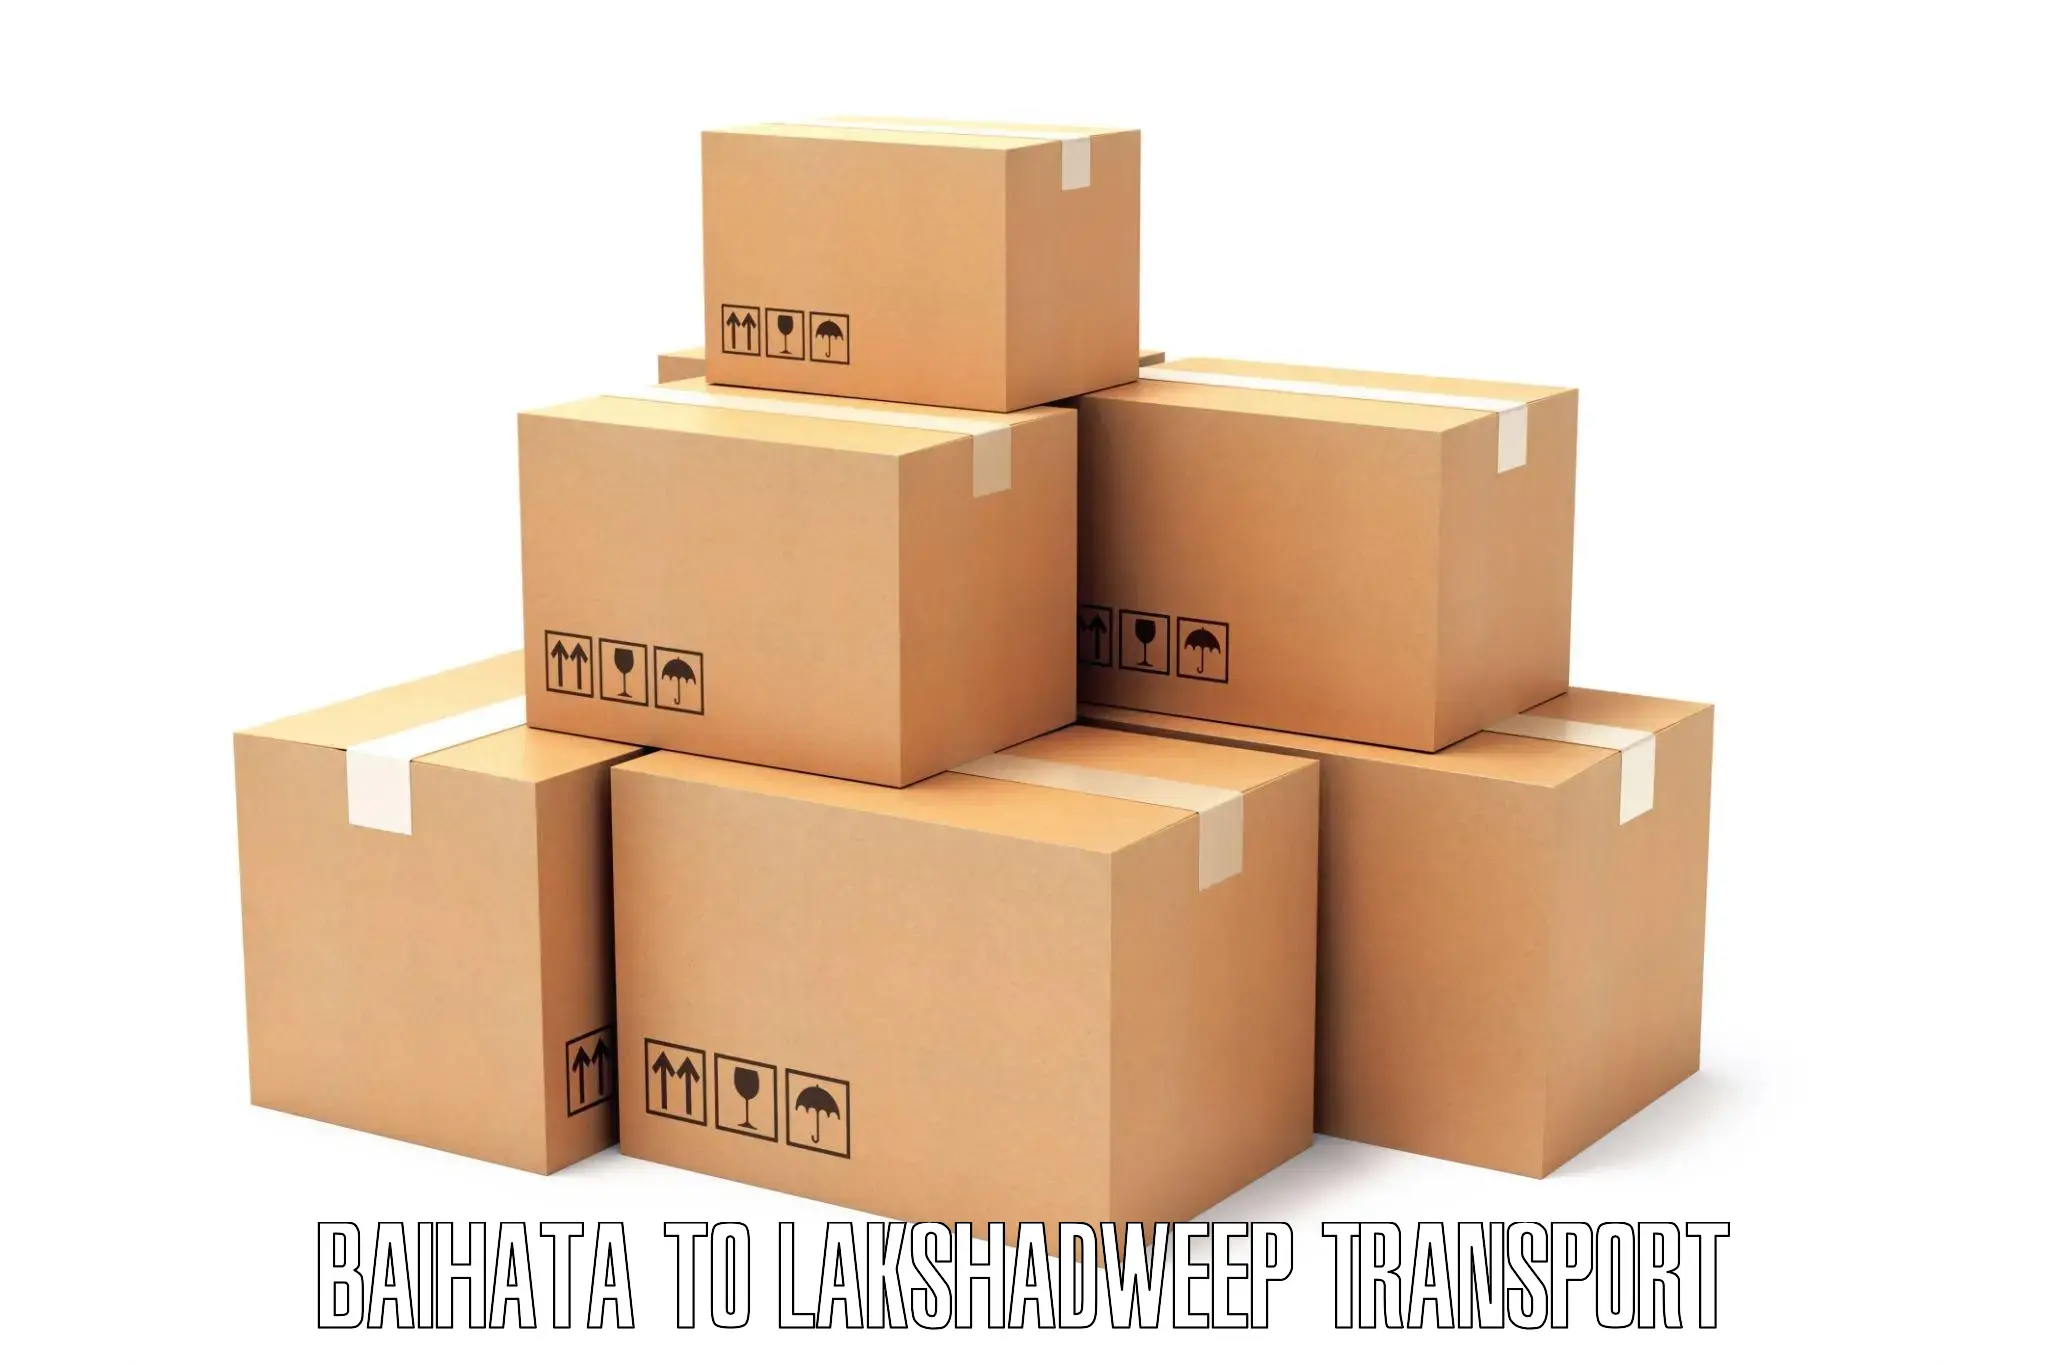 Furniture transport service Baihata to Lakshadweep